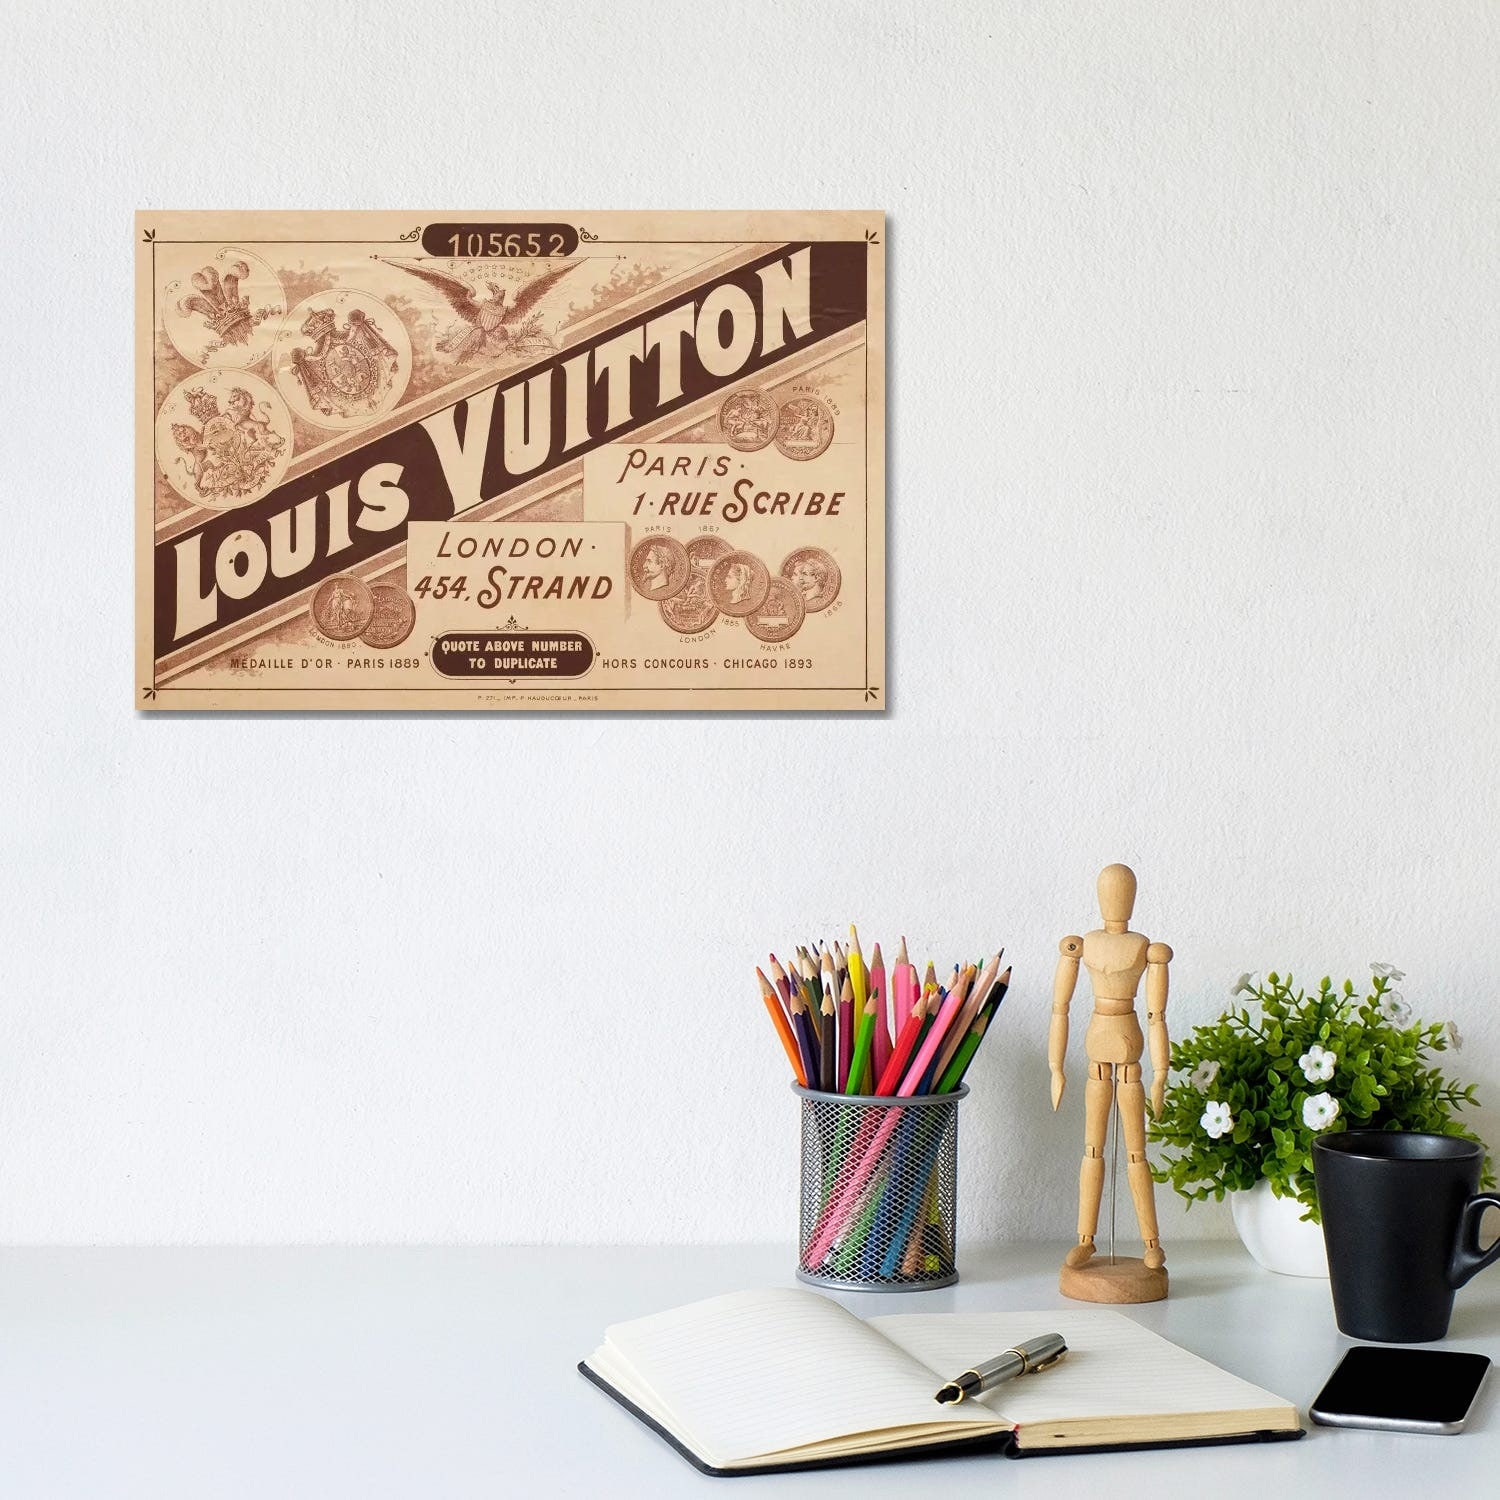 Louis Vuitton Canvas Art Prints, iCanvas